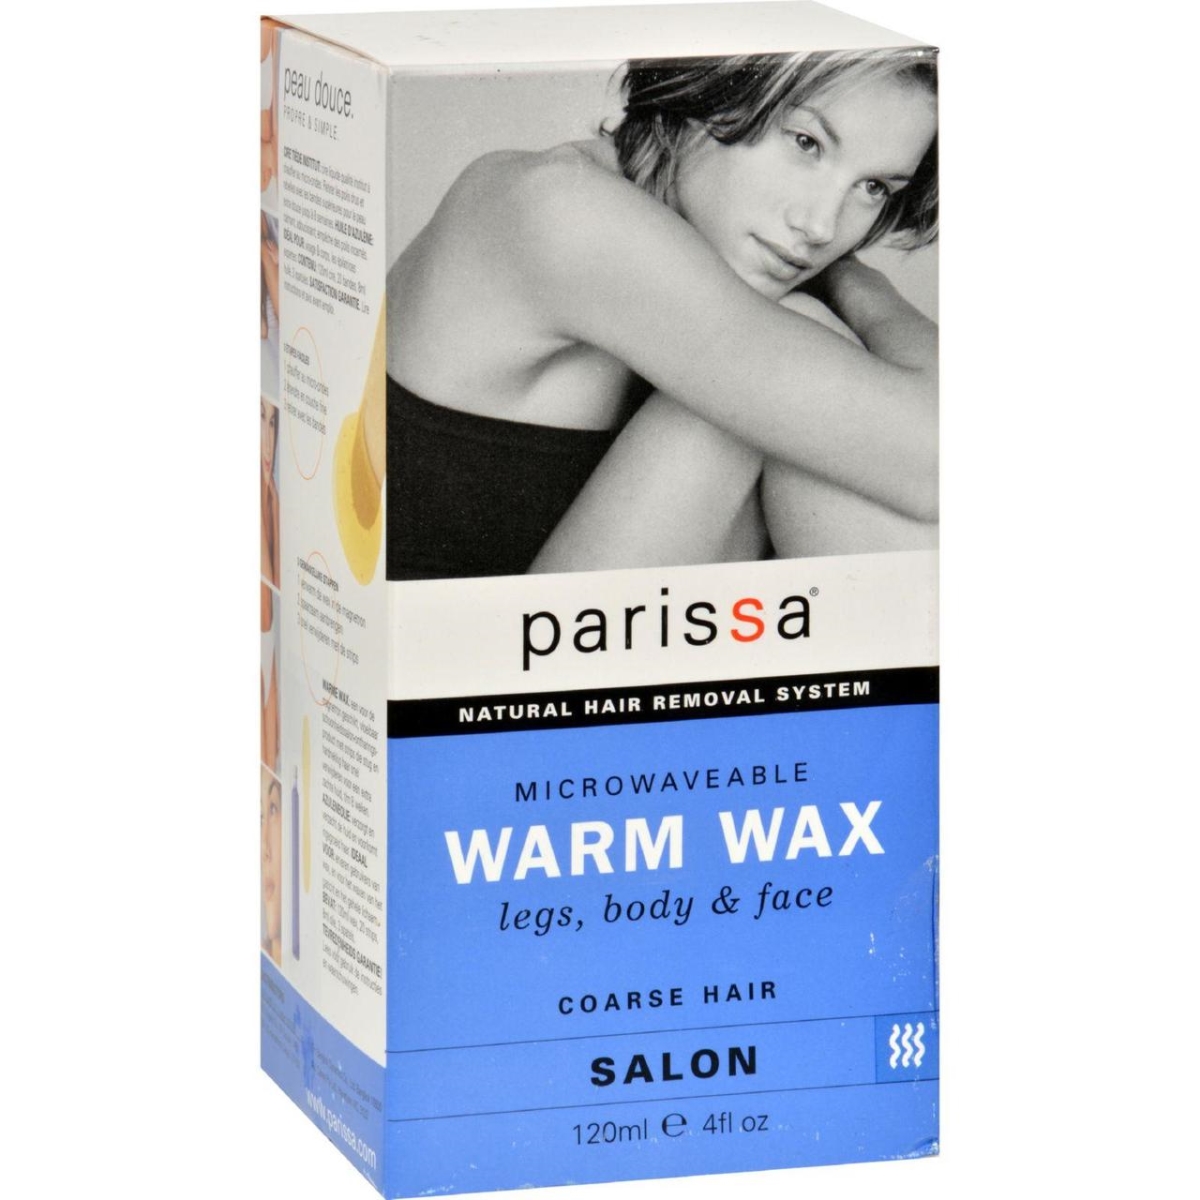 Hg0521955 4 Oz Hair Remover Warm Wax